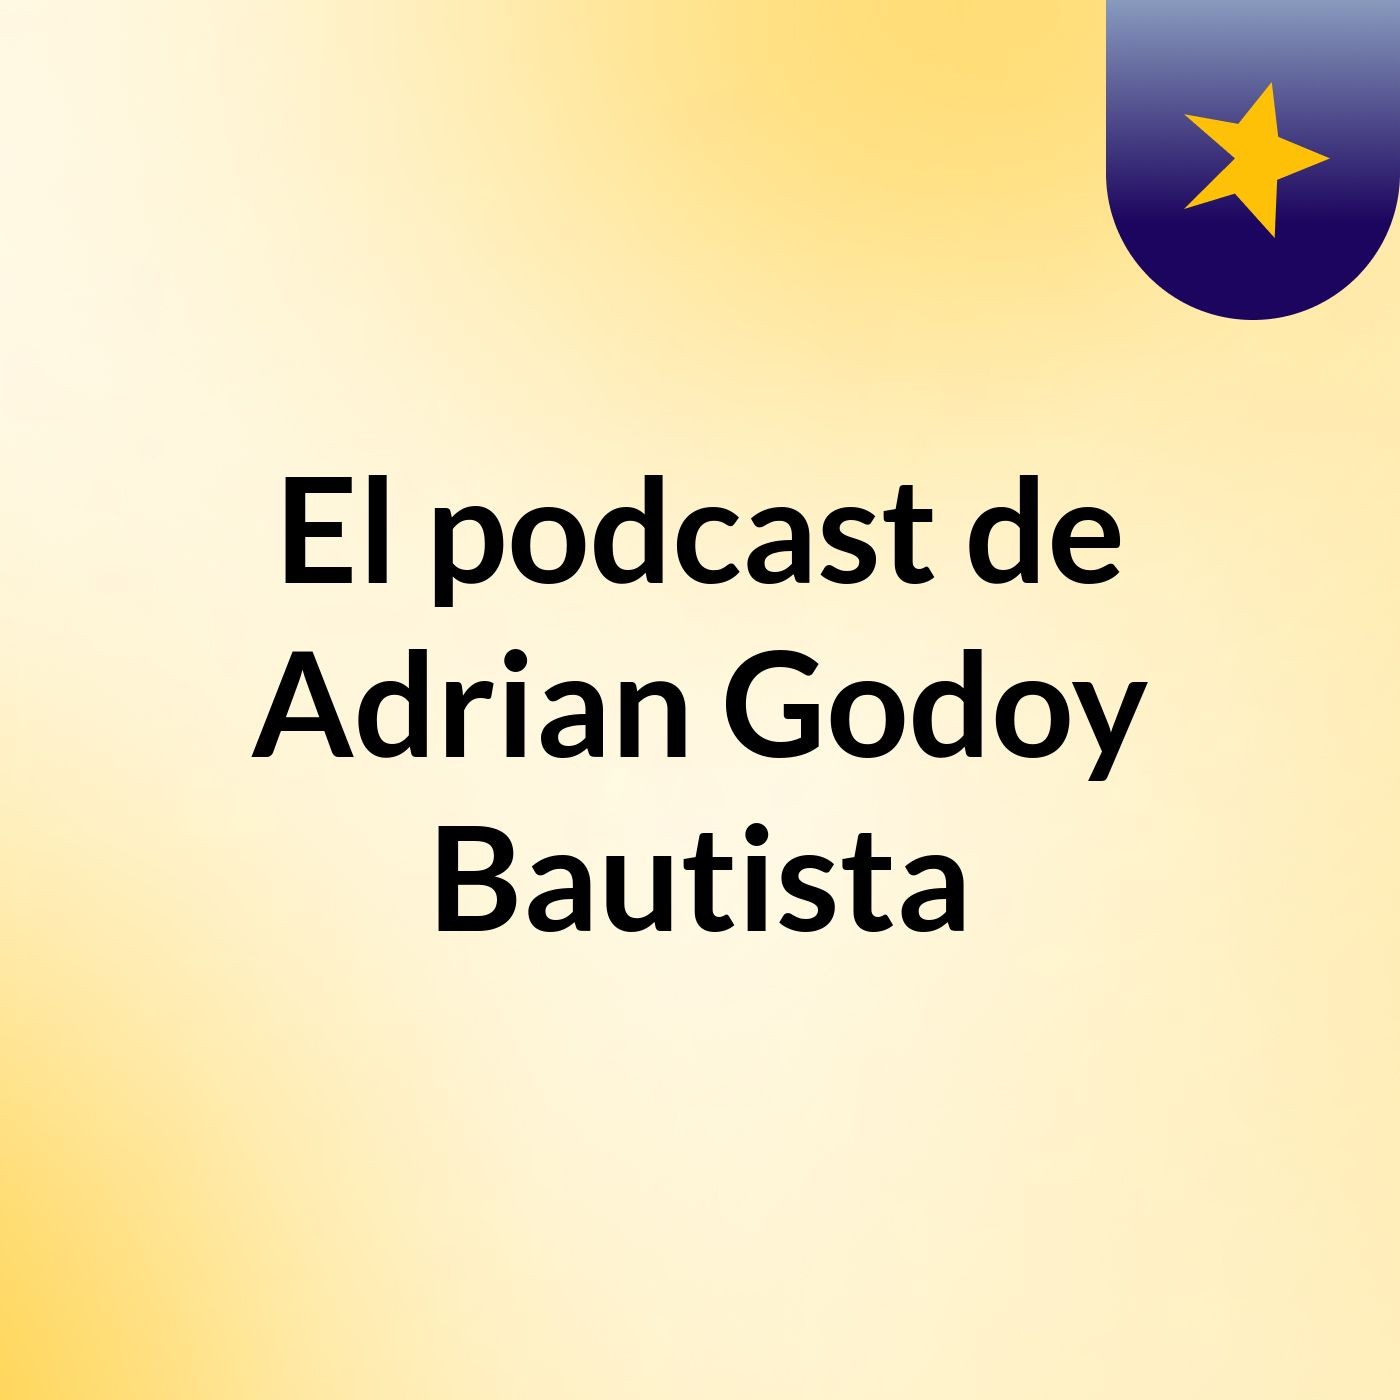 El podcast de Adrian Godoy Bautista